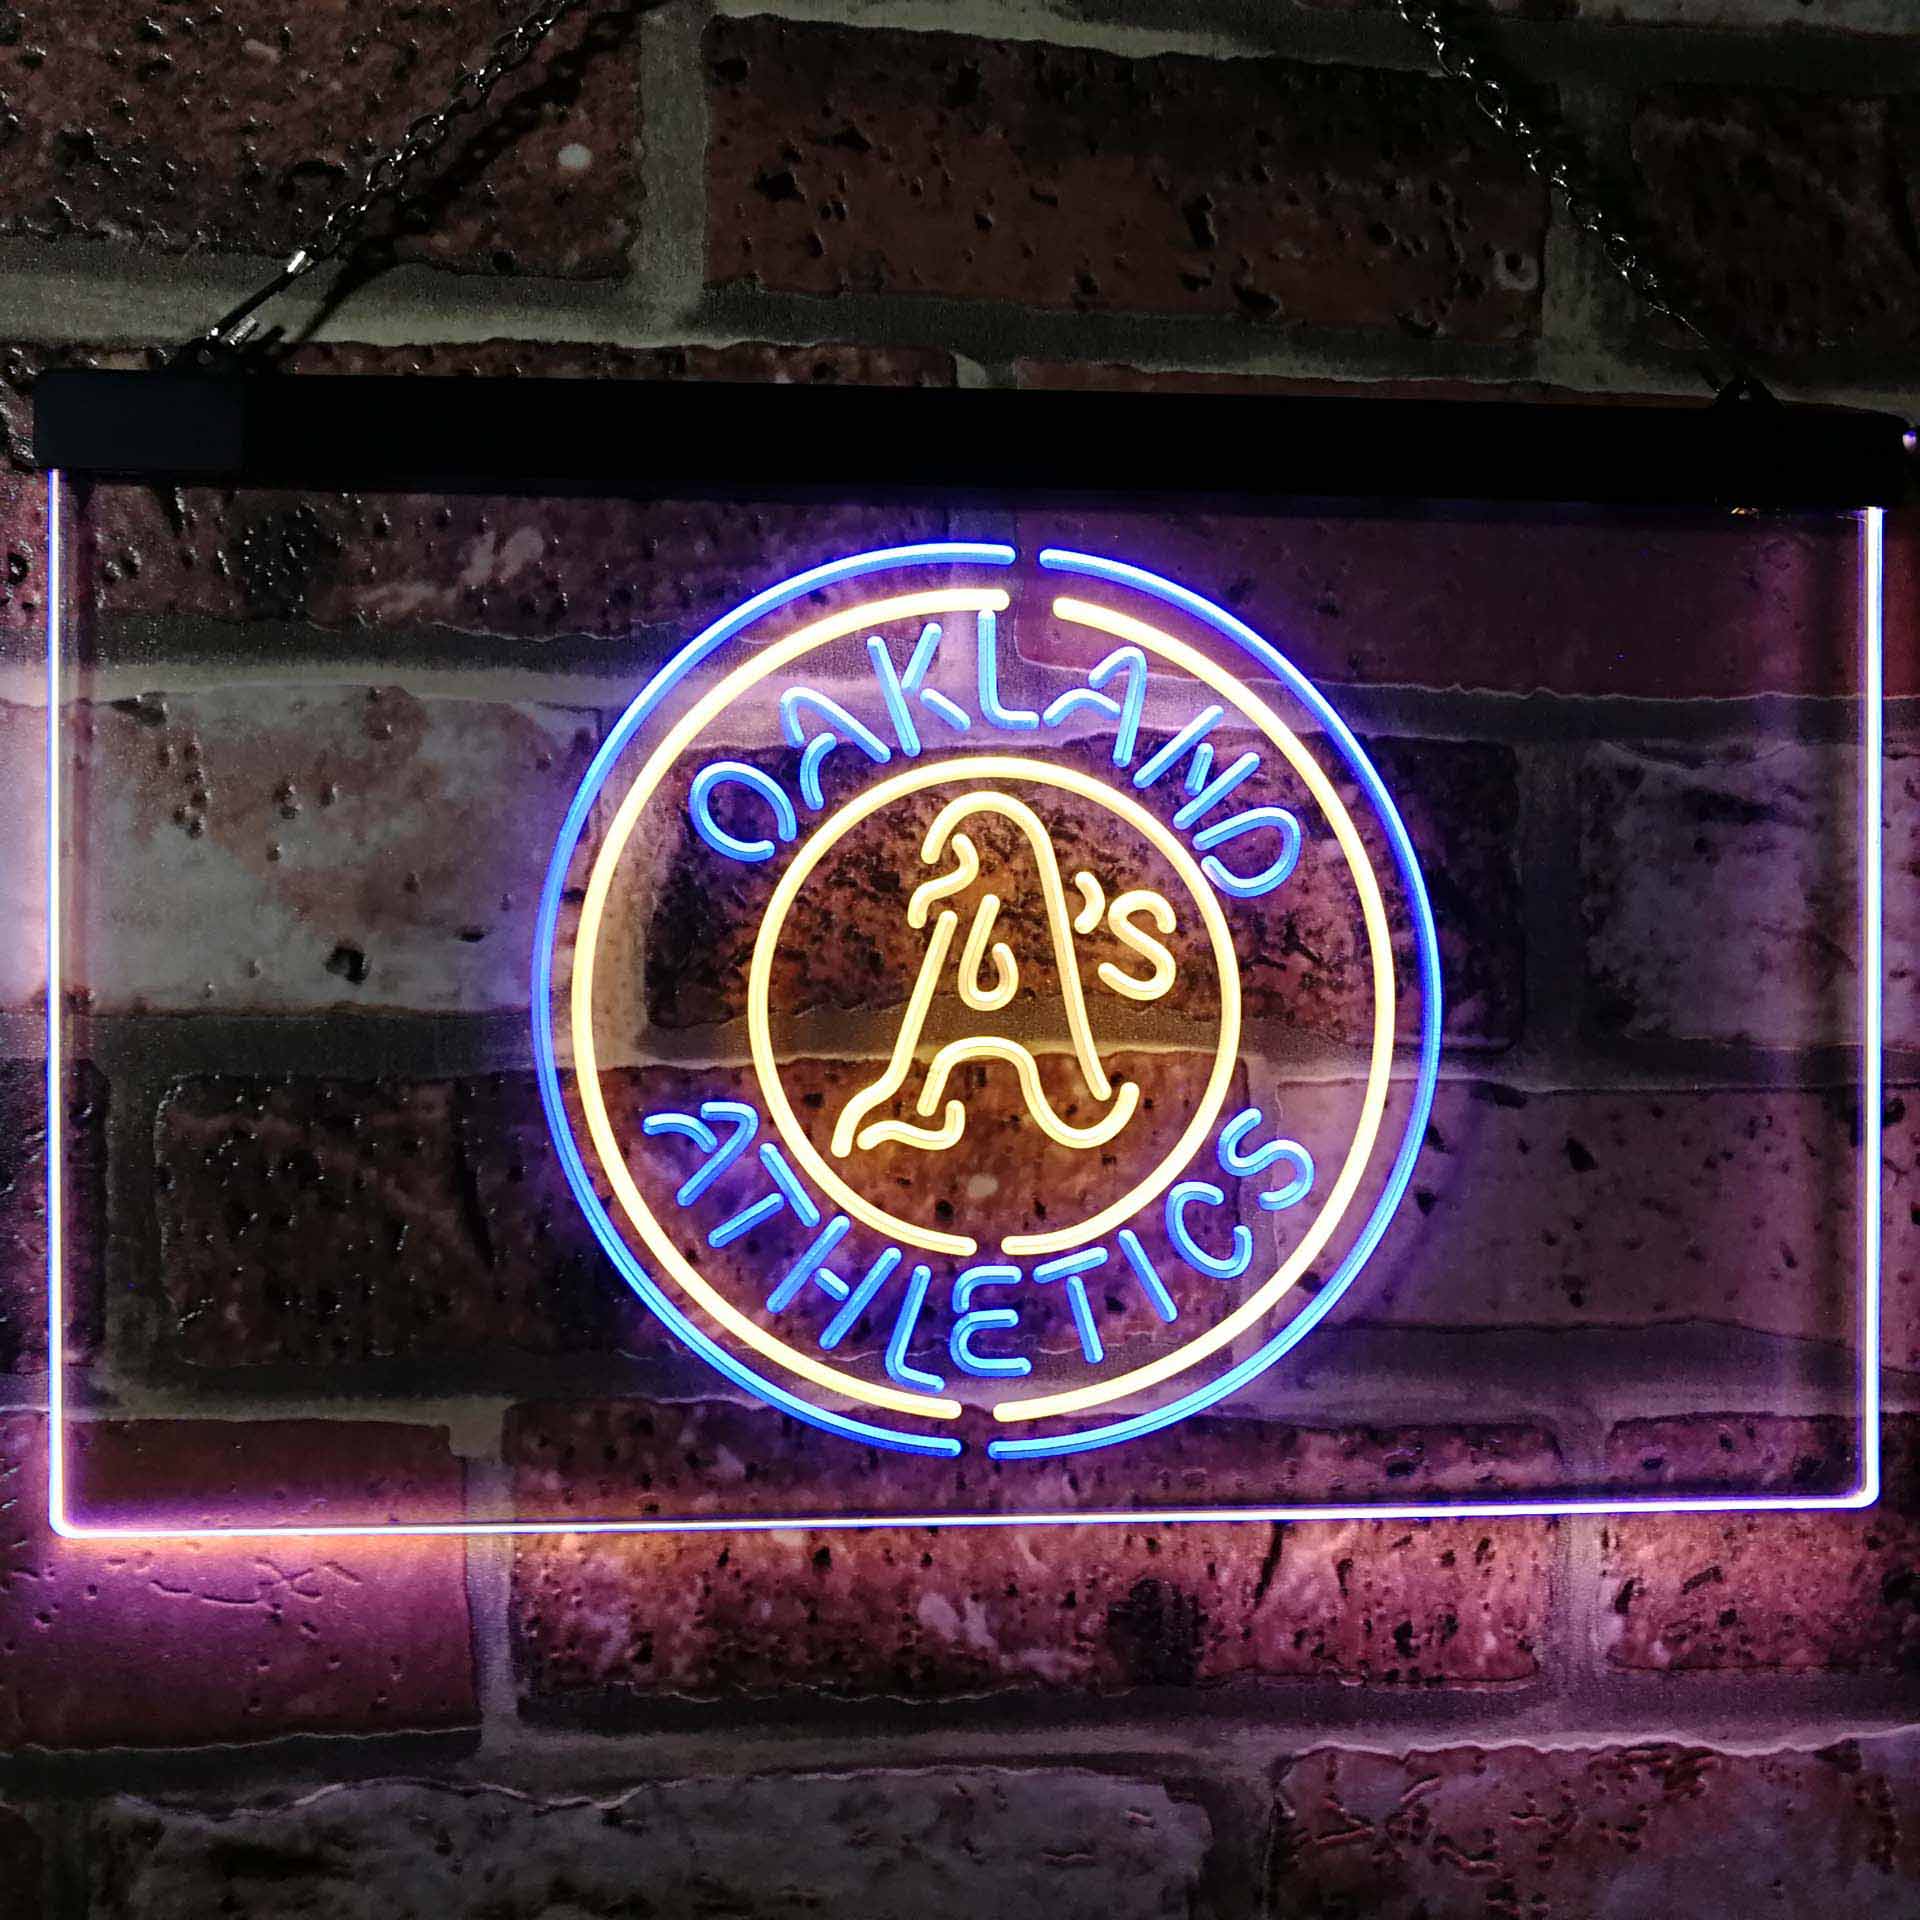 Oakland Athletics Neon-Like LED Sign